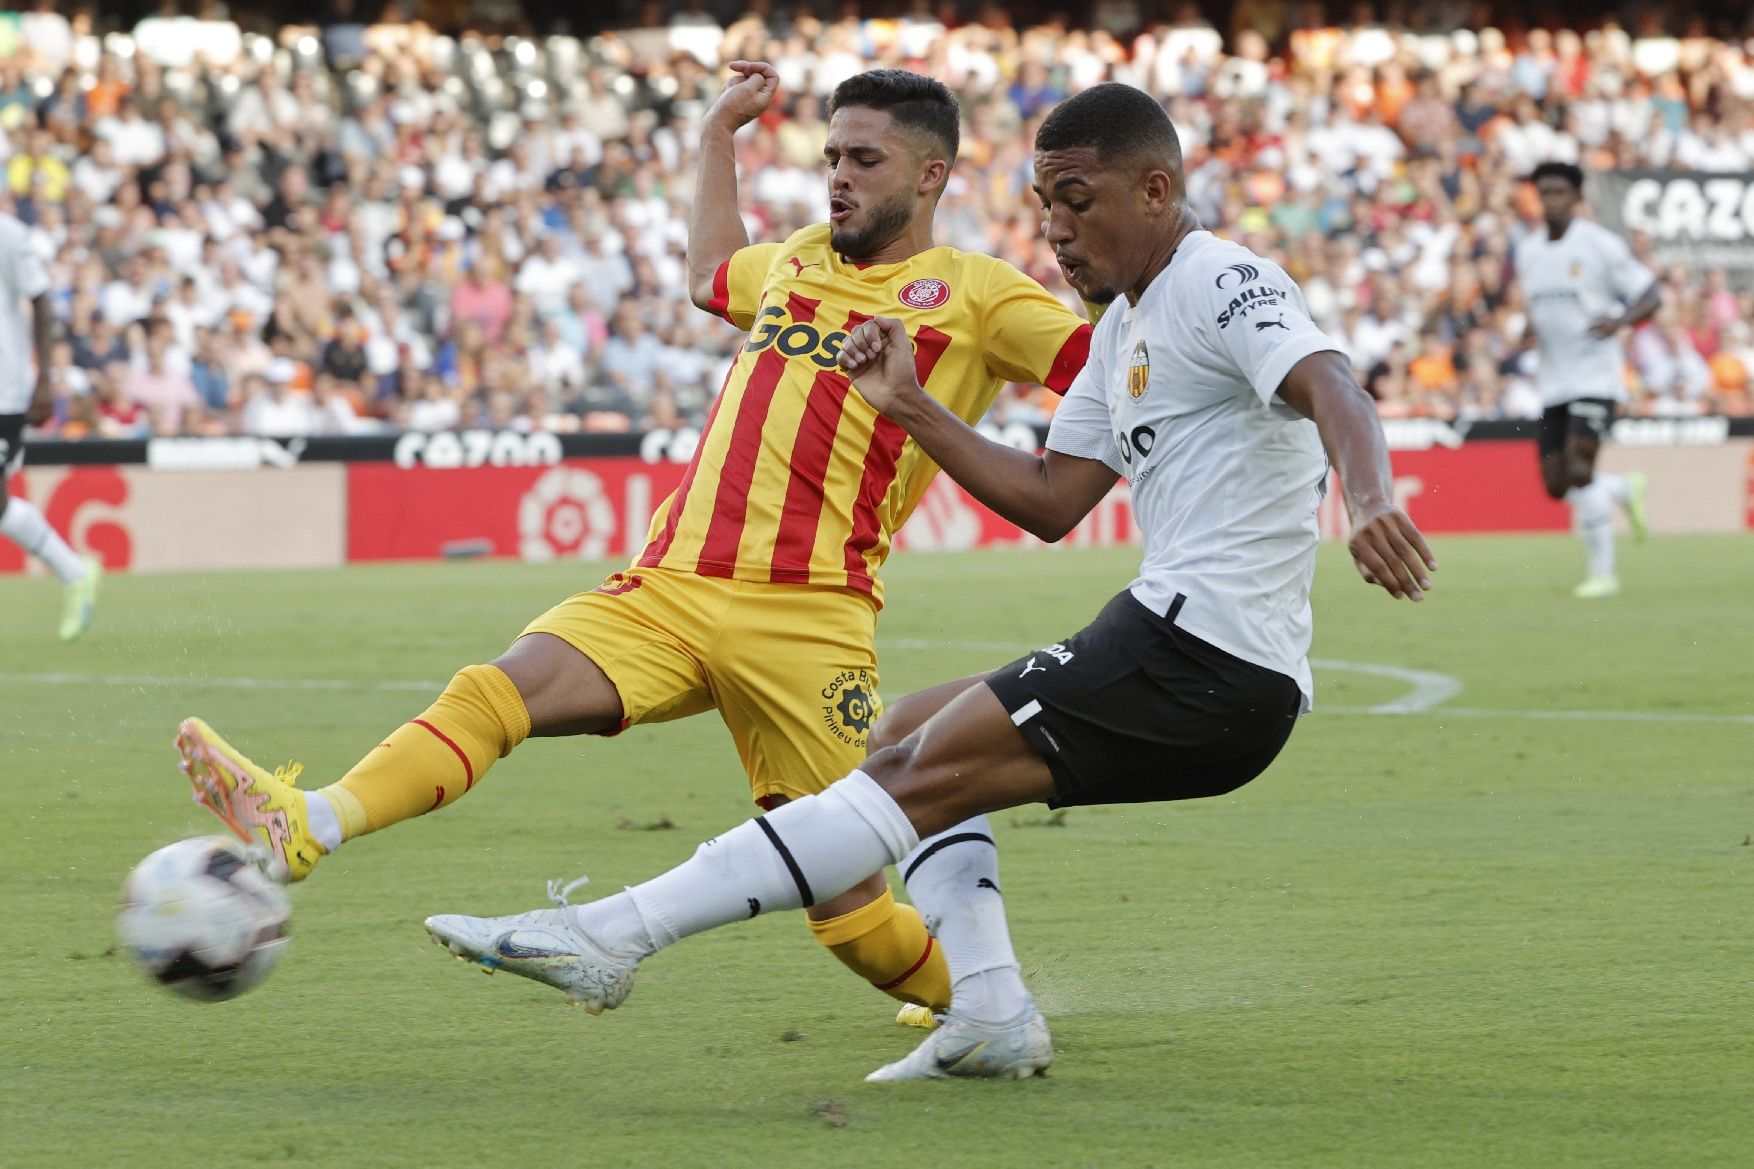 Primer partit del Girona a la Lliga contra el València a Mestalla